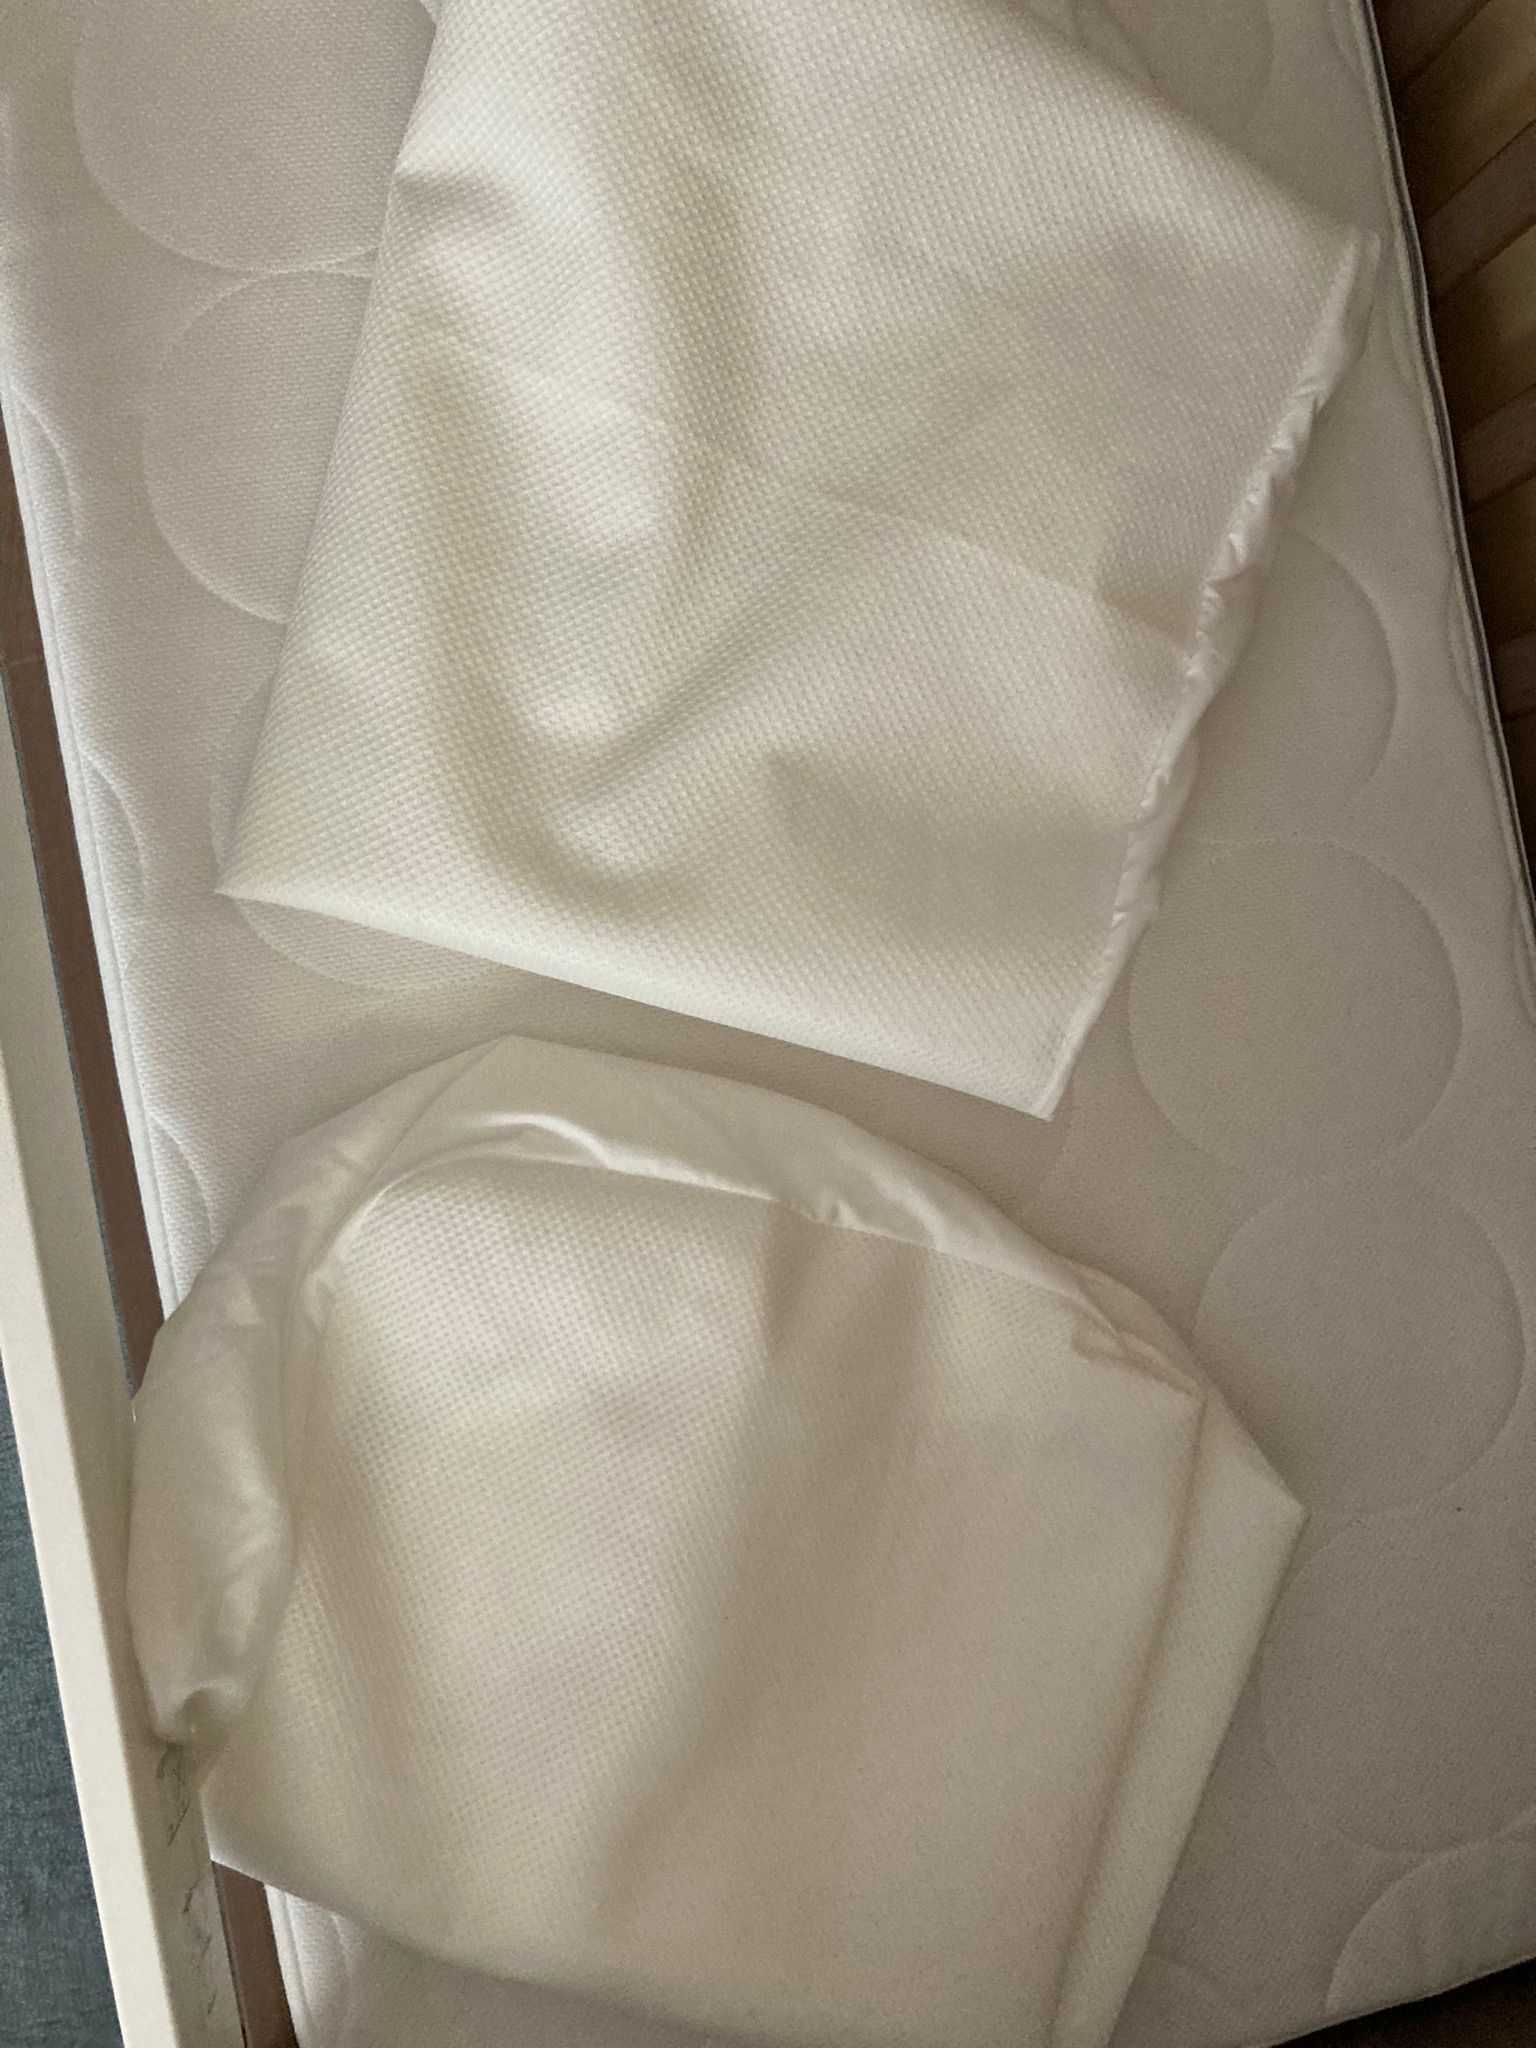 Protetor de colchão e lençol ajustável conjunto IKEA - como novo